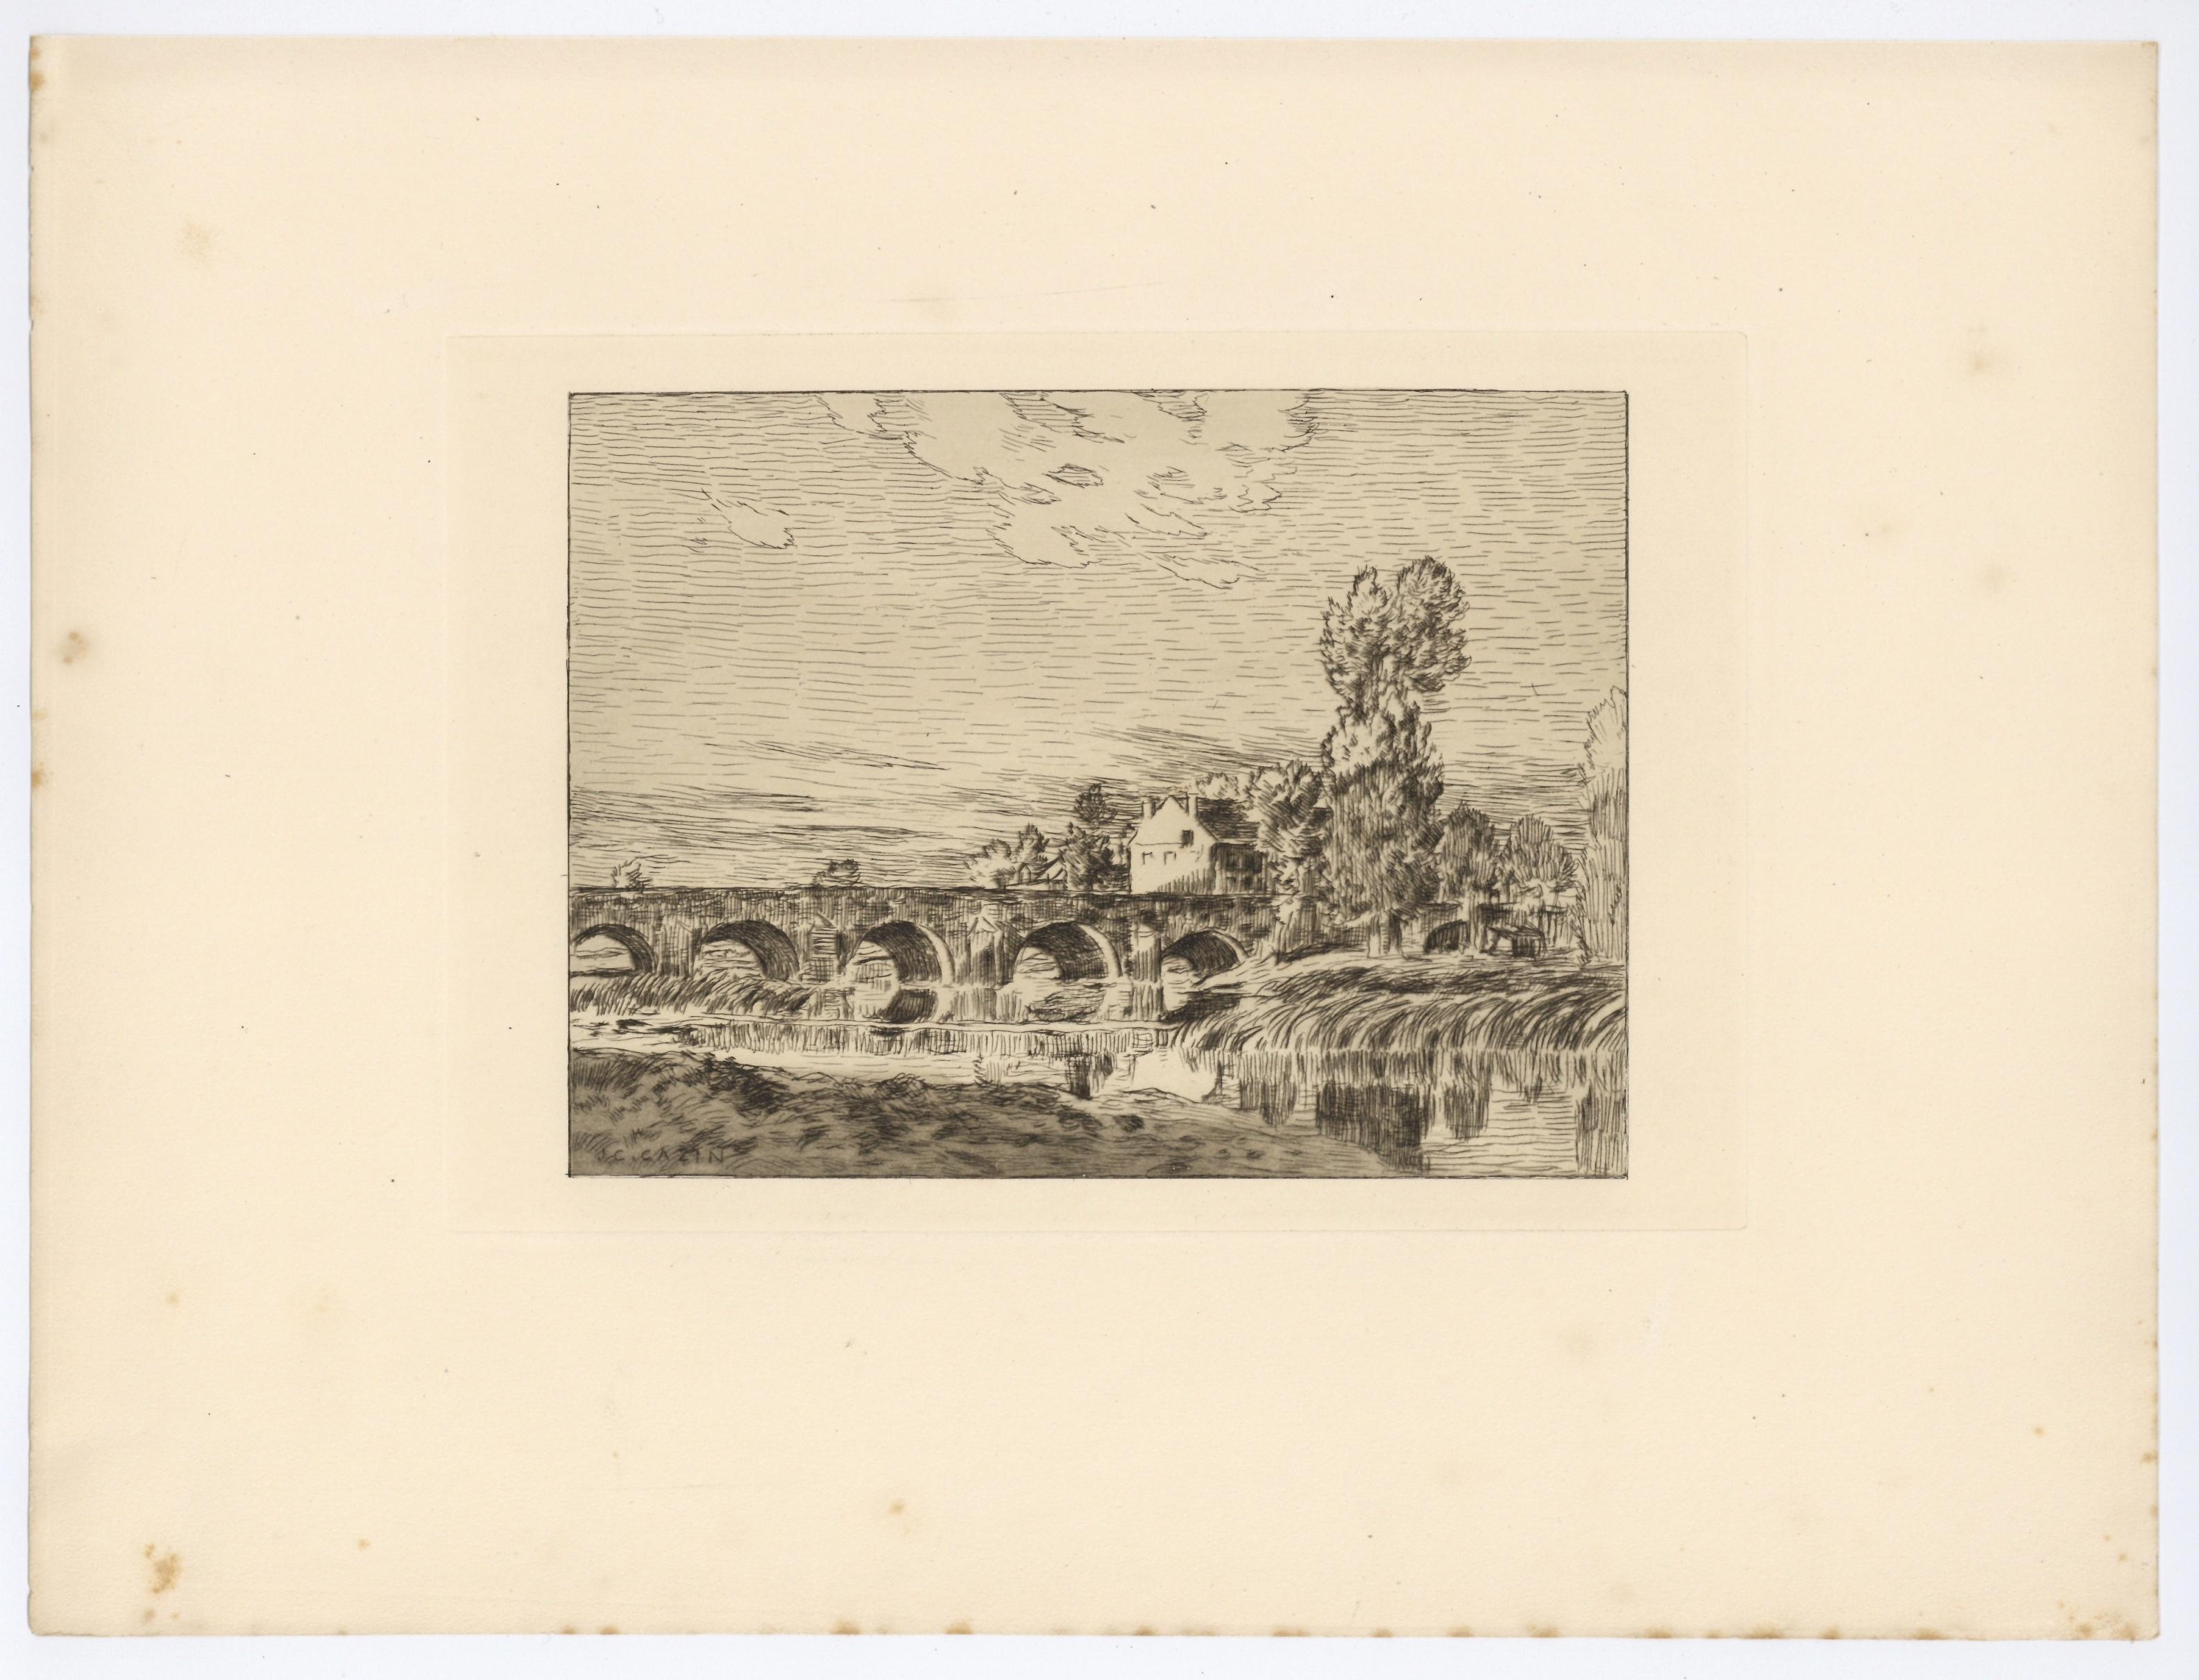 Medium: original etching. This impression is from the rare 1897 portfolio 